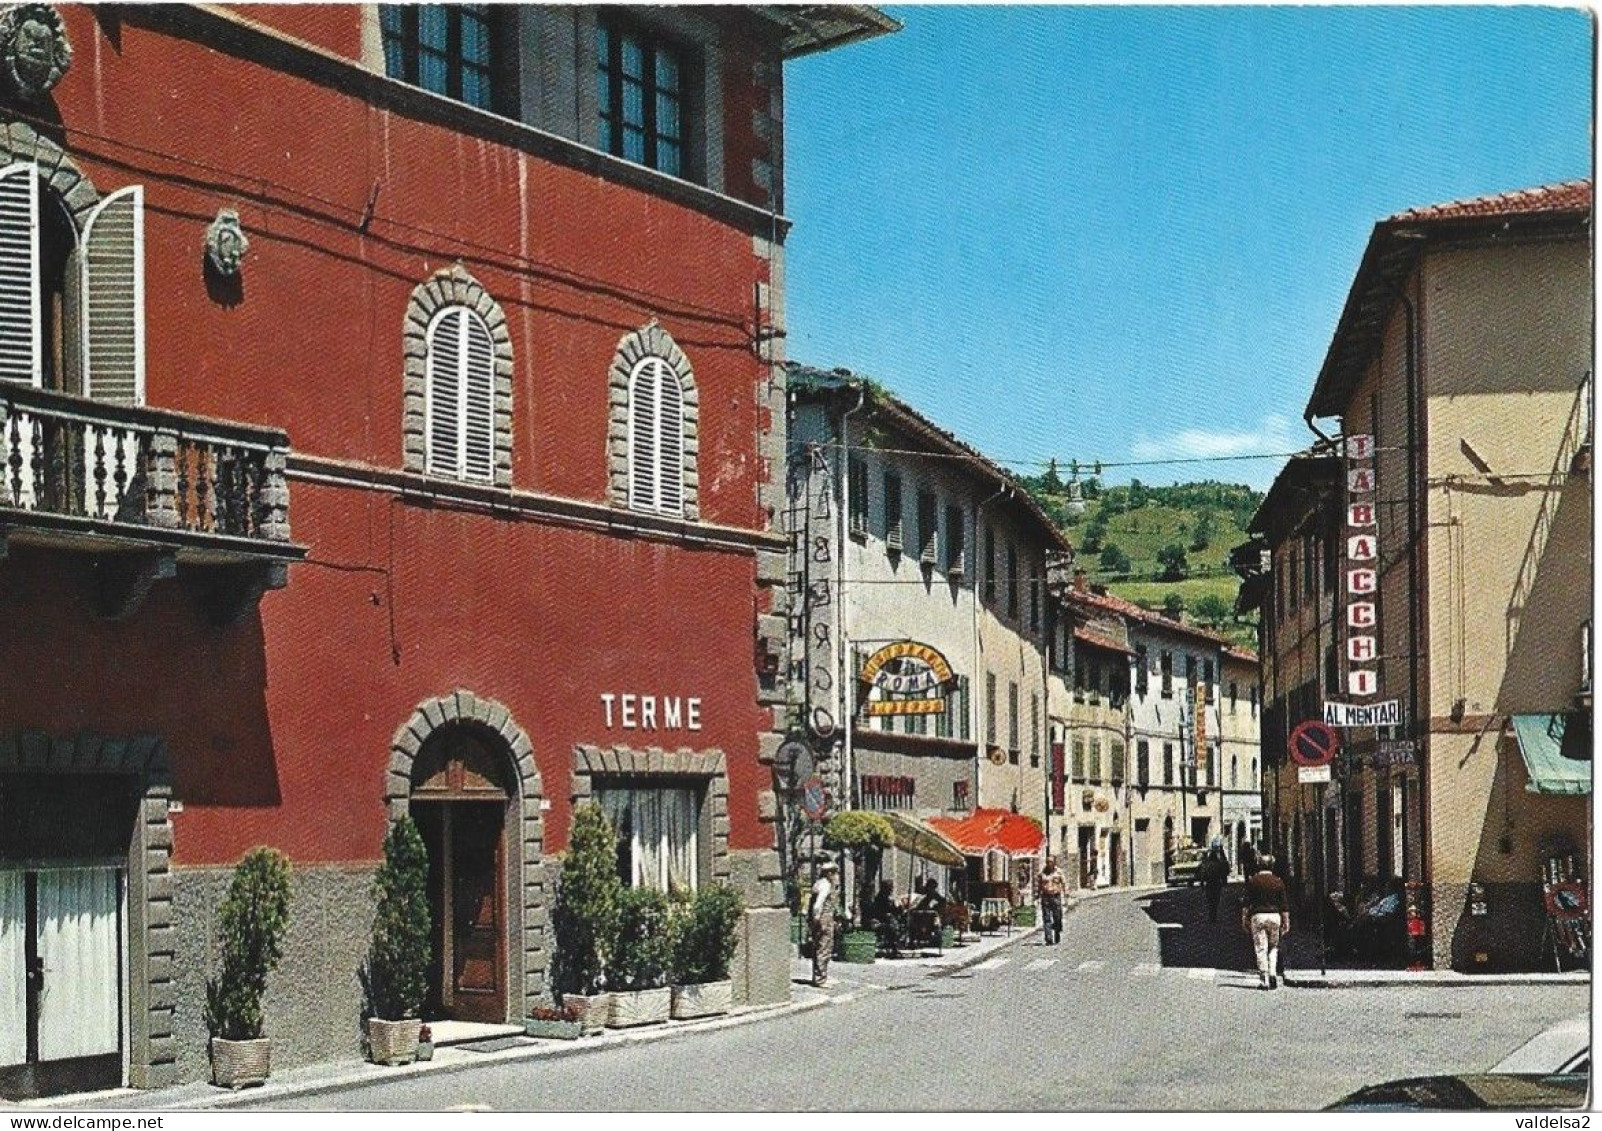 BAGNO DI ROMAGNA TERME - FORLI'/CESENA - VIA MANIN - TABACCHERIA / TABACCHI - ANIMATA - 1983 - Forlì